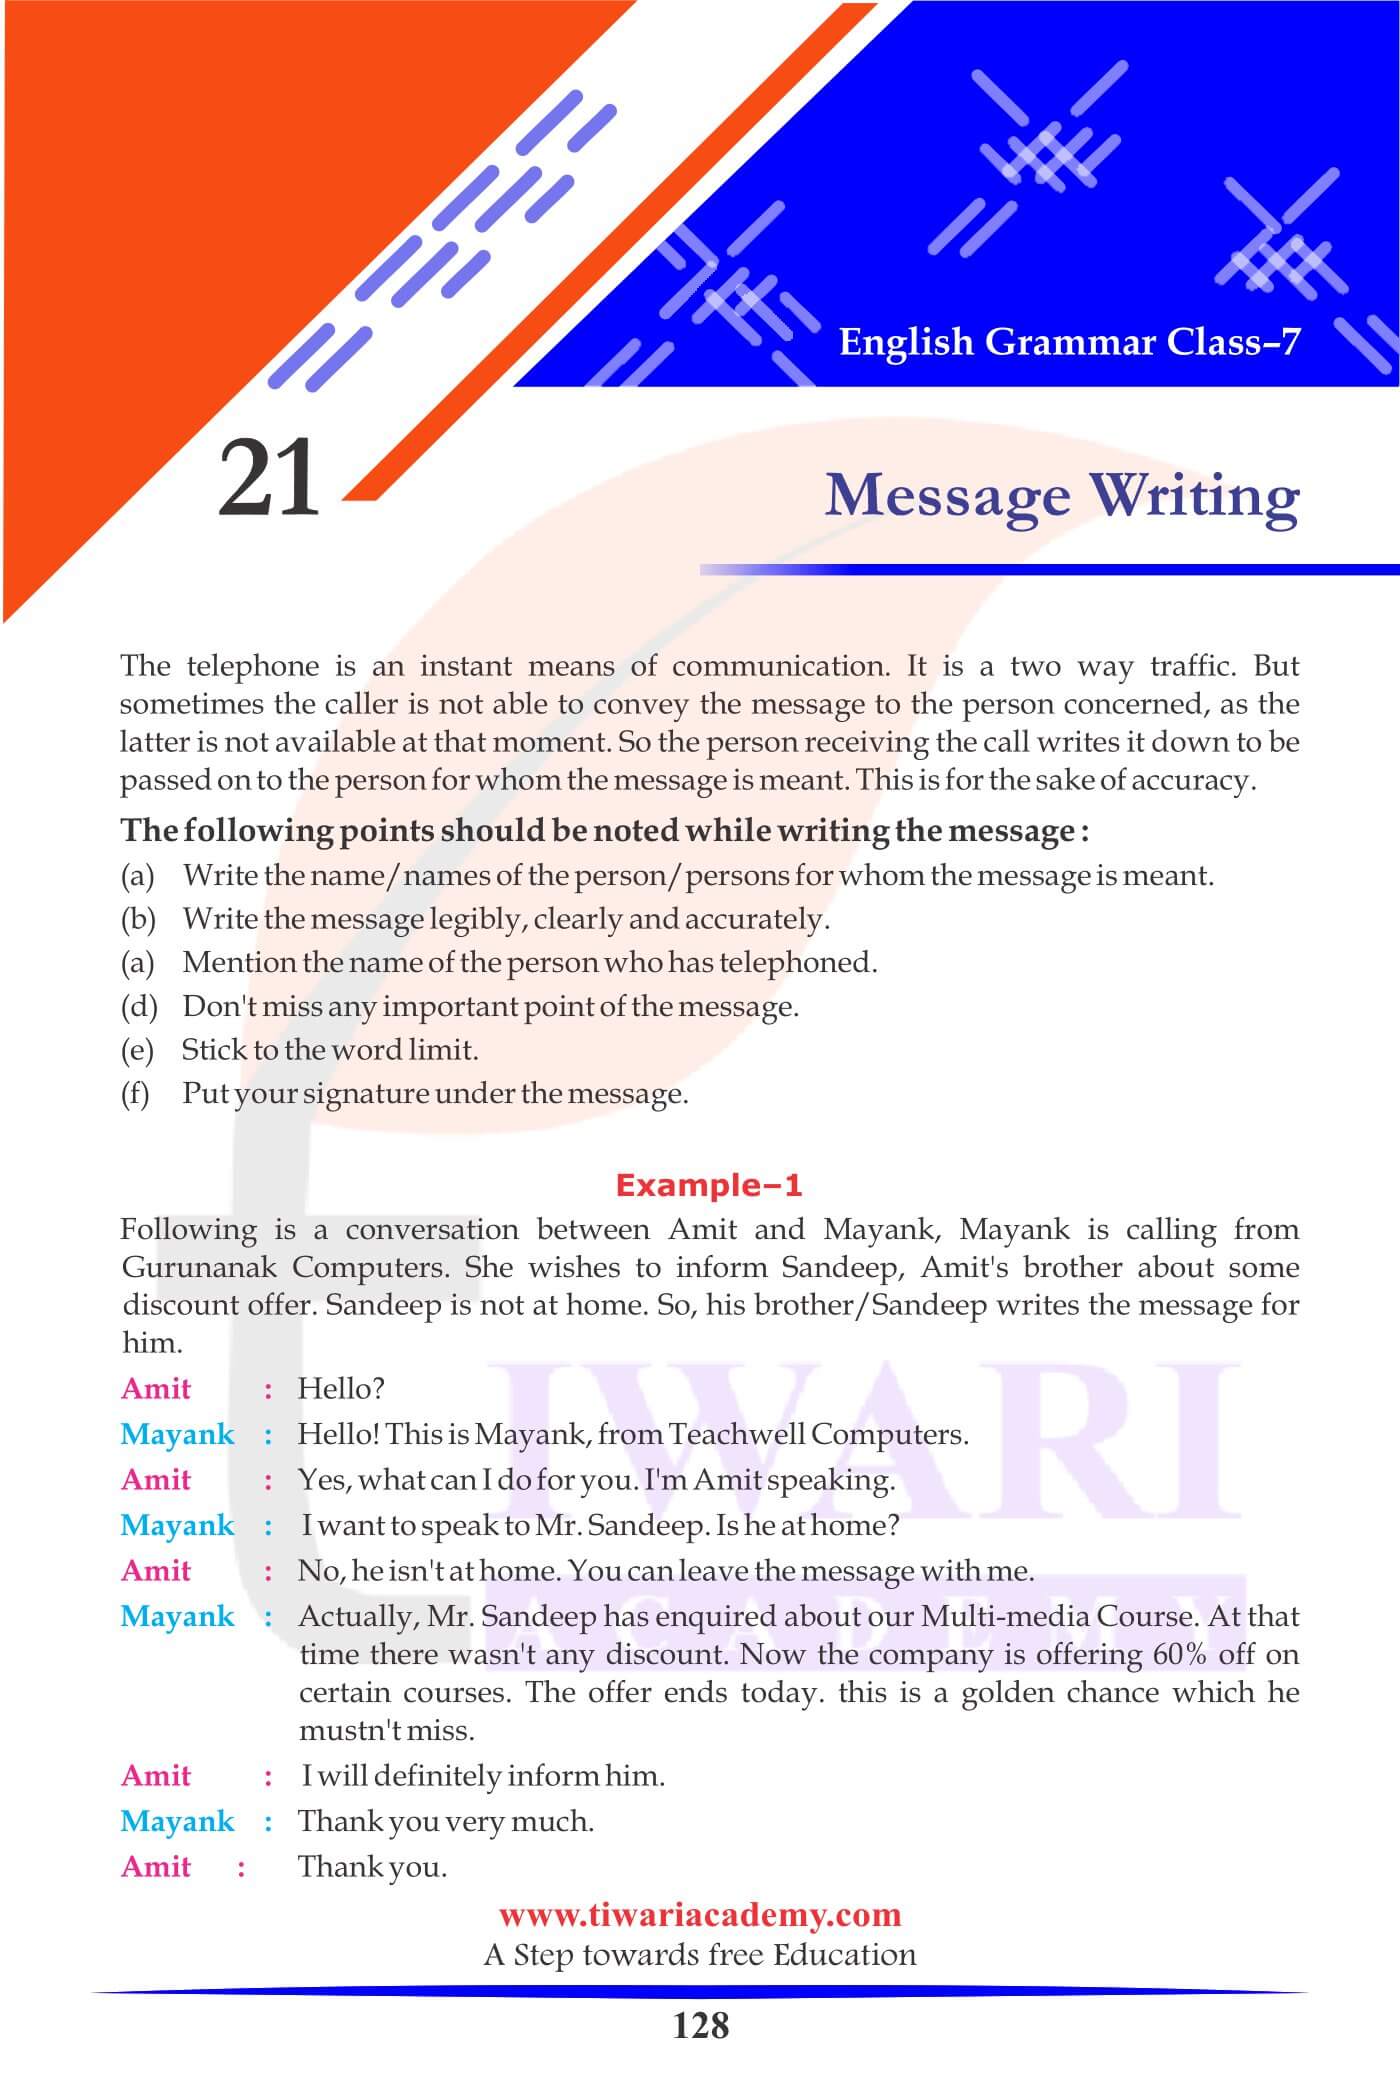 Class 7 English Grammar Message Writing